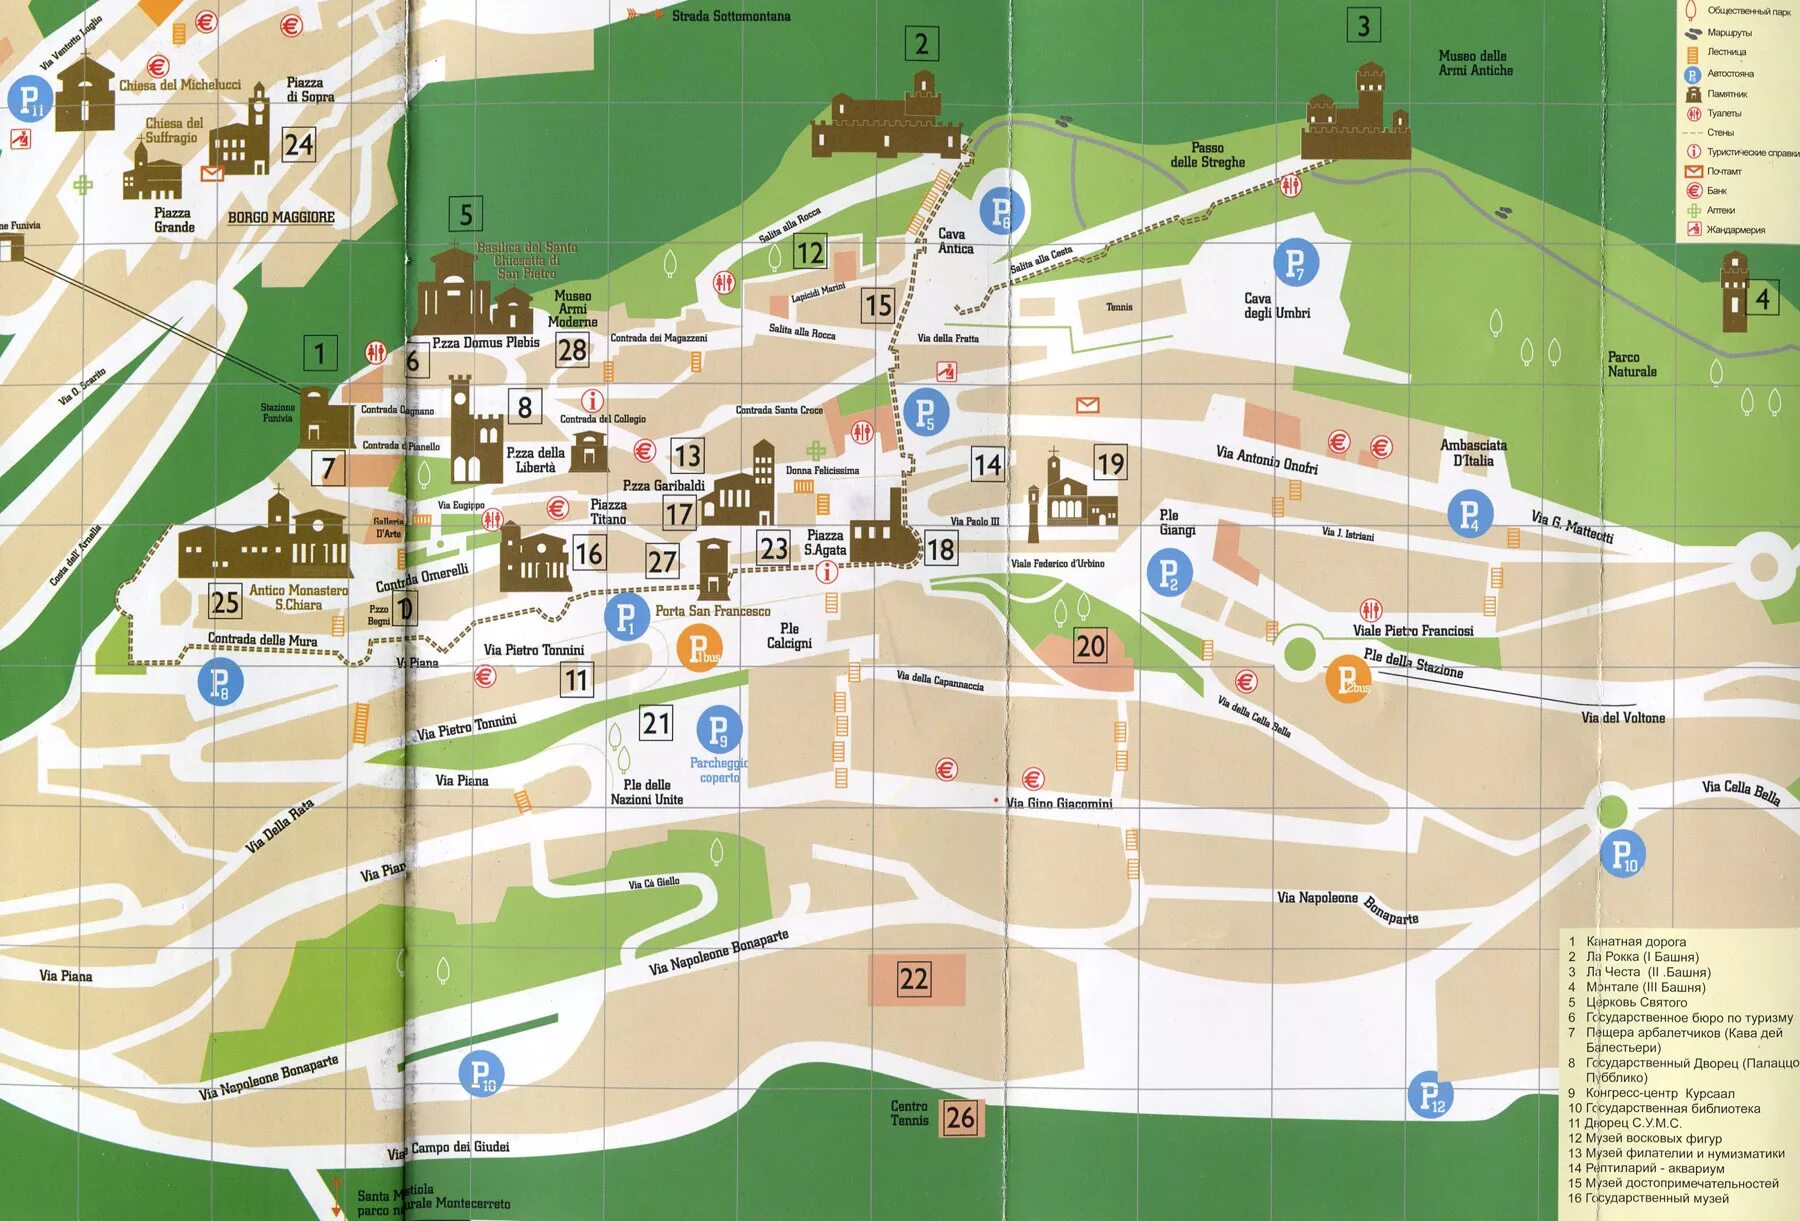 Сан марино где. Сан Марино карта Туристская. Сан-Марино на карте схема. Туристическая карта Римини. Республика Сан-Марино на карте.